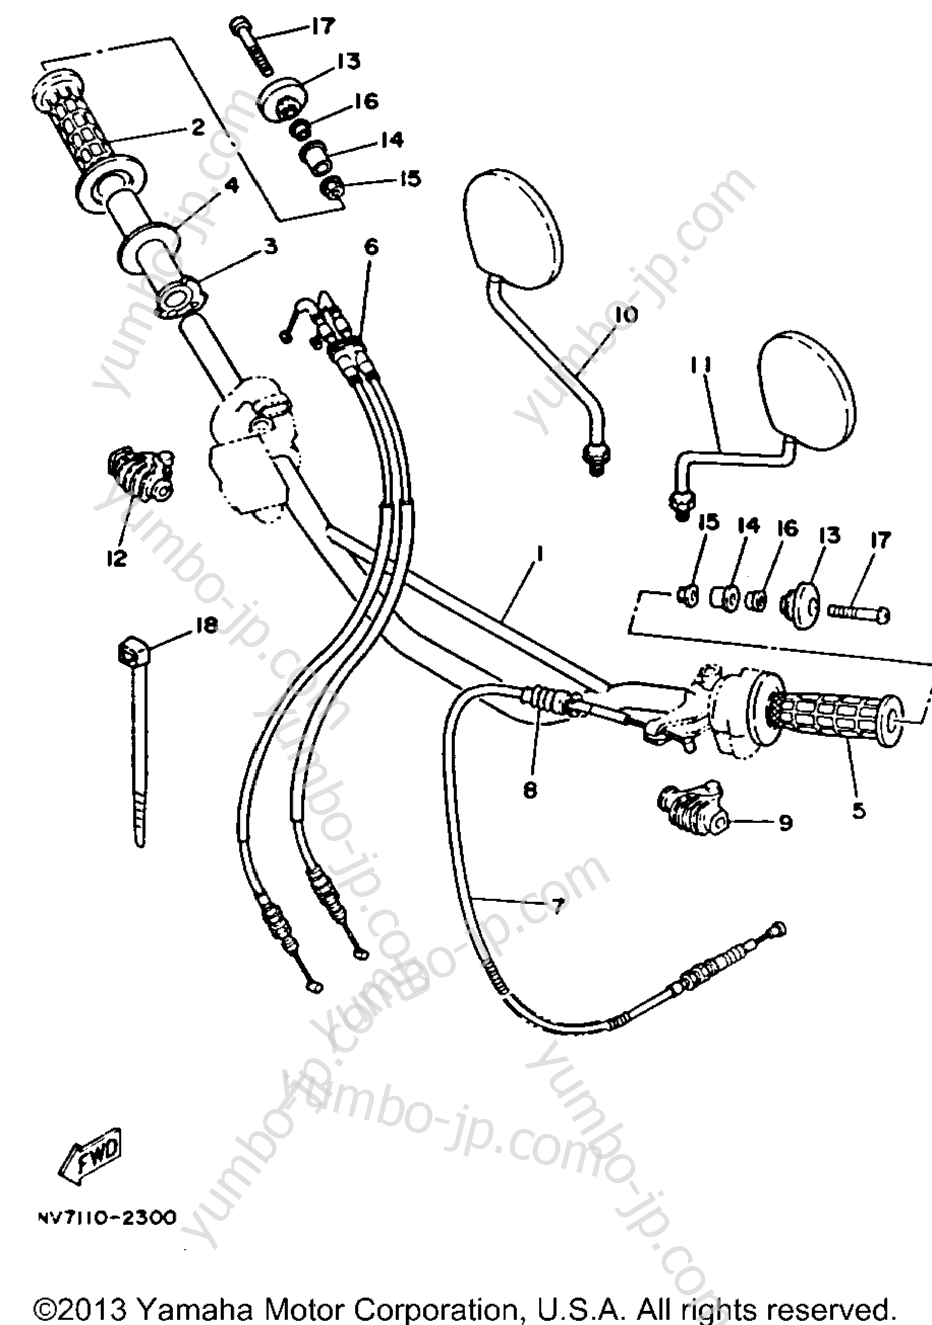 Handlebar - Cable for motorcycles YAMAHA XT350DC CA 1992 year